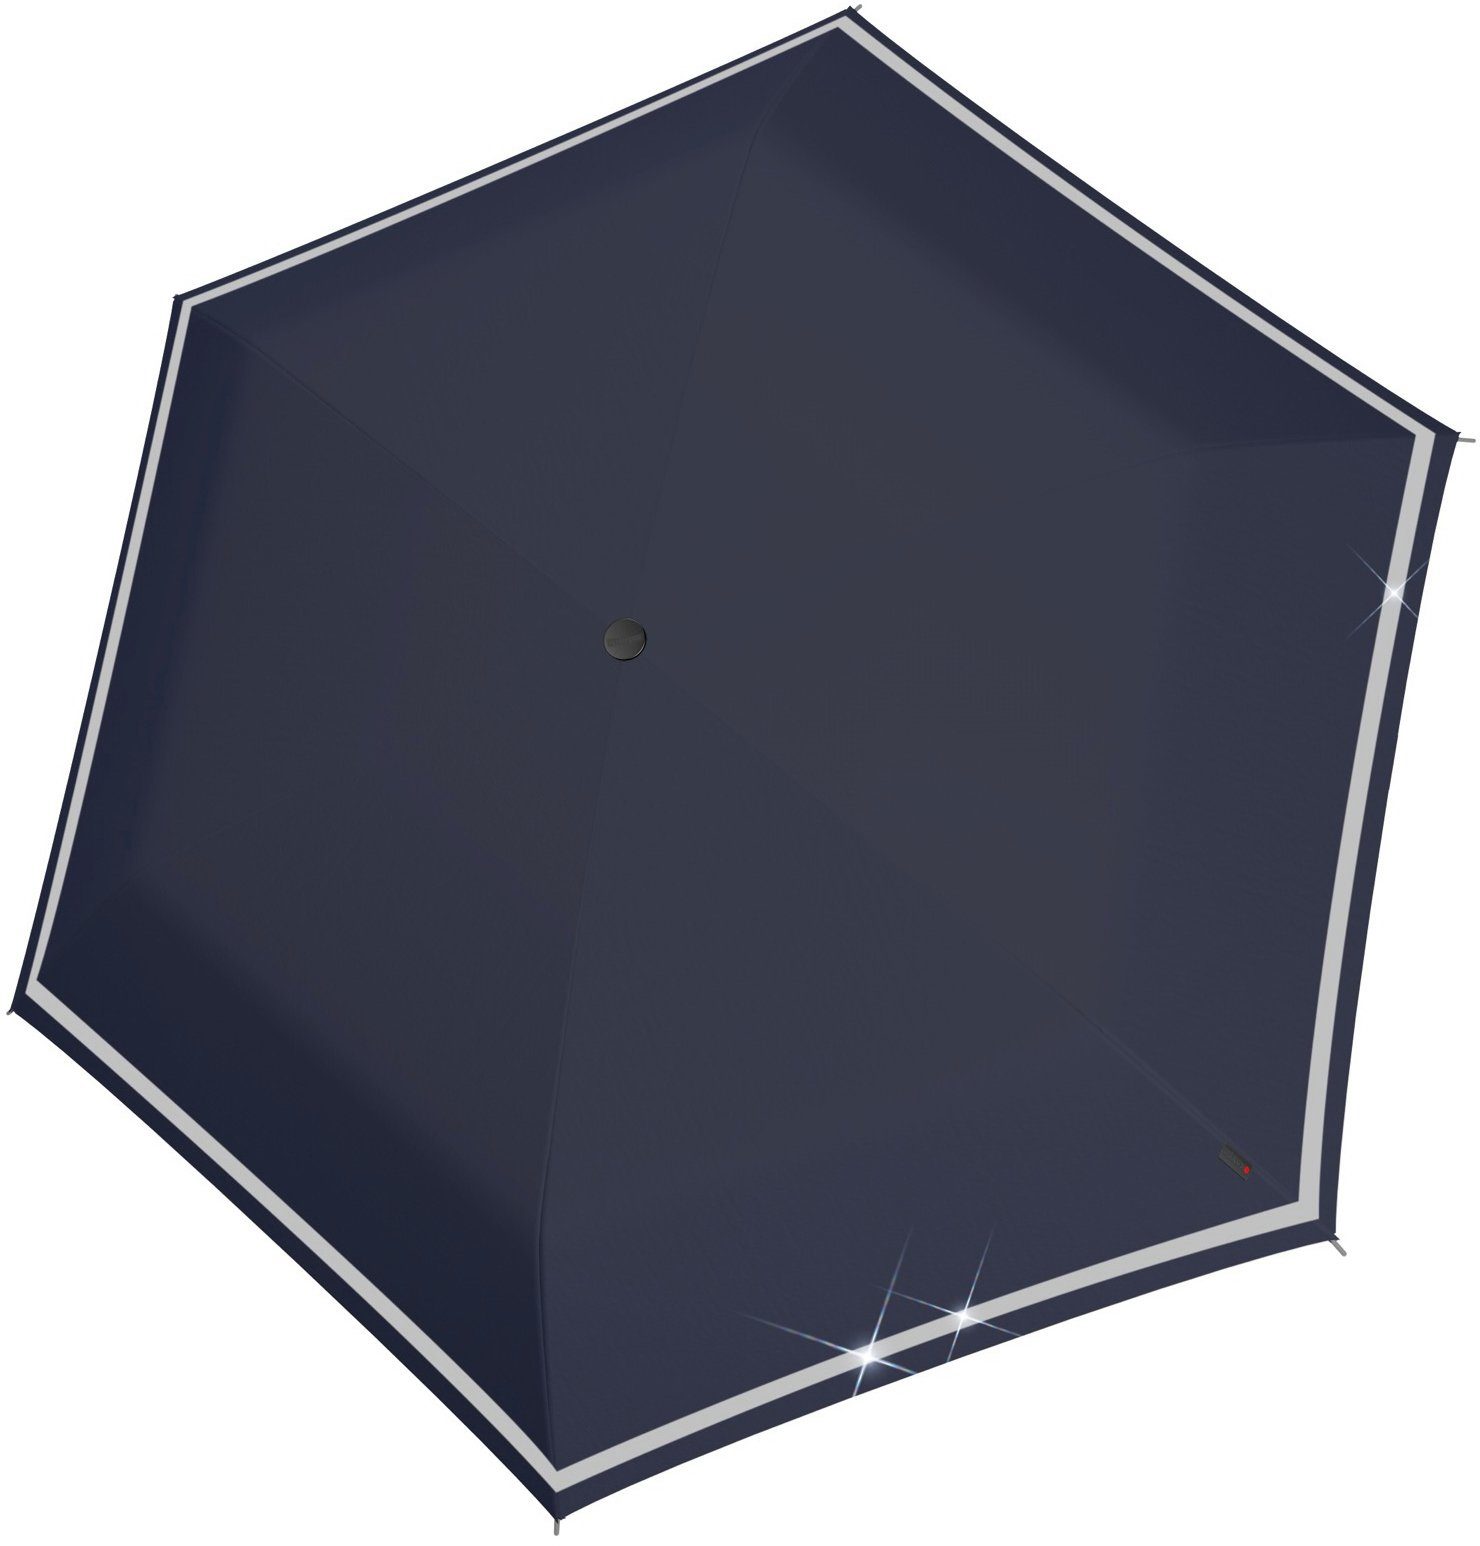 Rookie reflective, mit reflektierendem für umlaufendem, Band navy Knirps® manual, Kinder; Taschenregenschirm